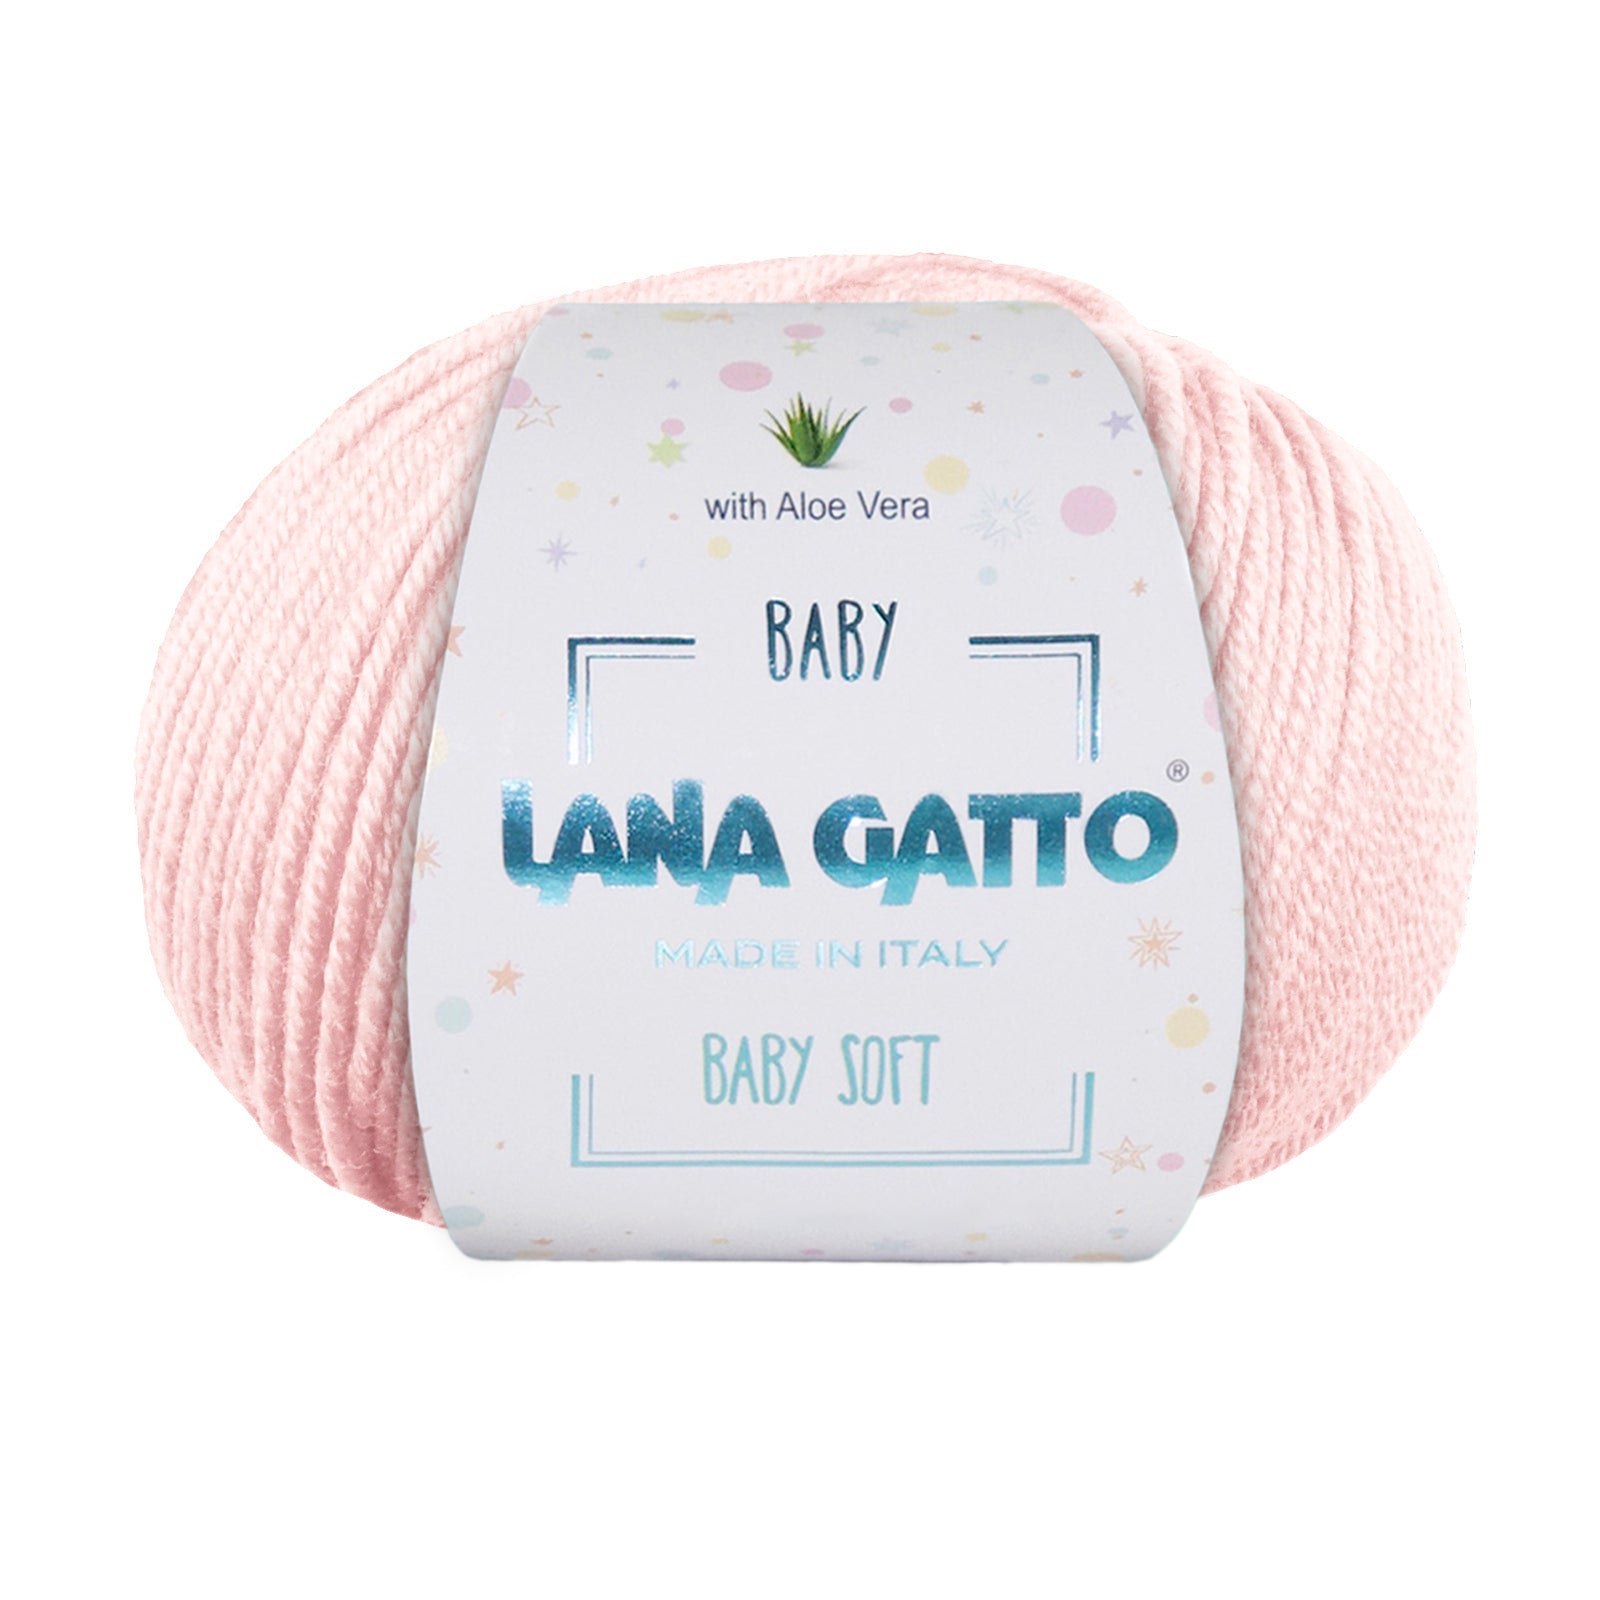 Gomitolo 100% Pura Lana Vergine Merino Extrafine, Lana Gatto Linea Baby Soft con Aloe Vera - Tonalità Rosa